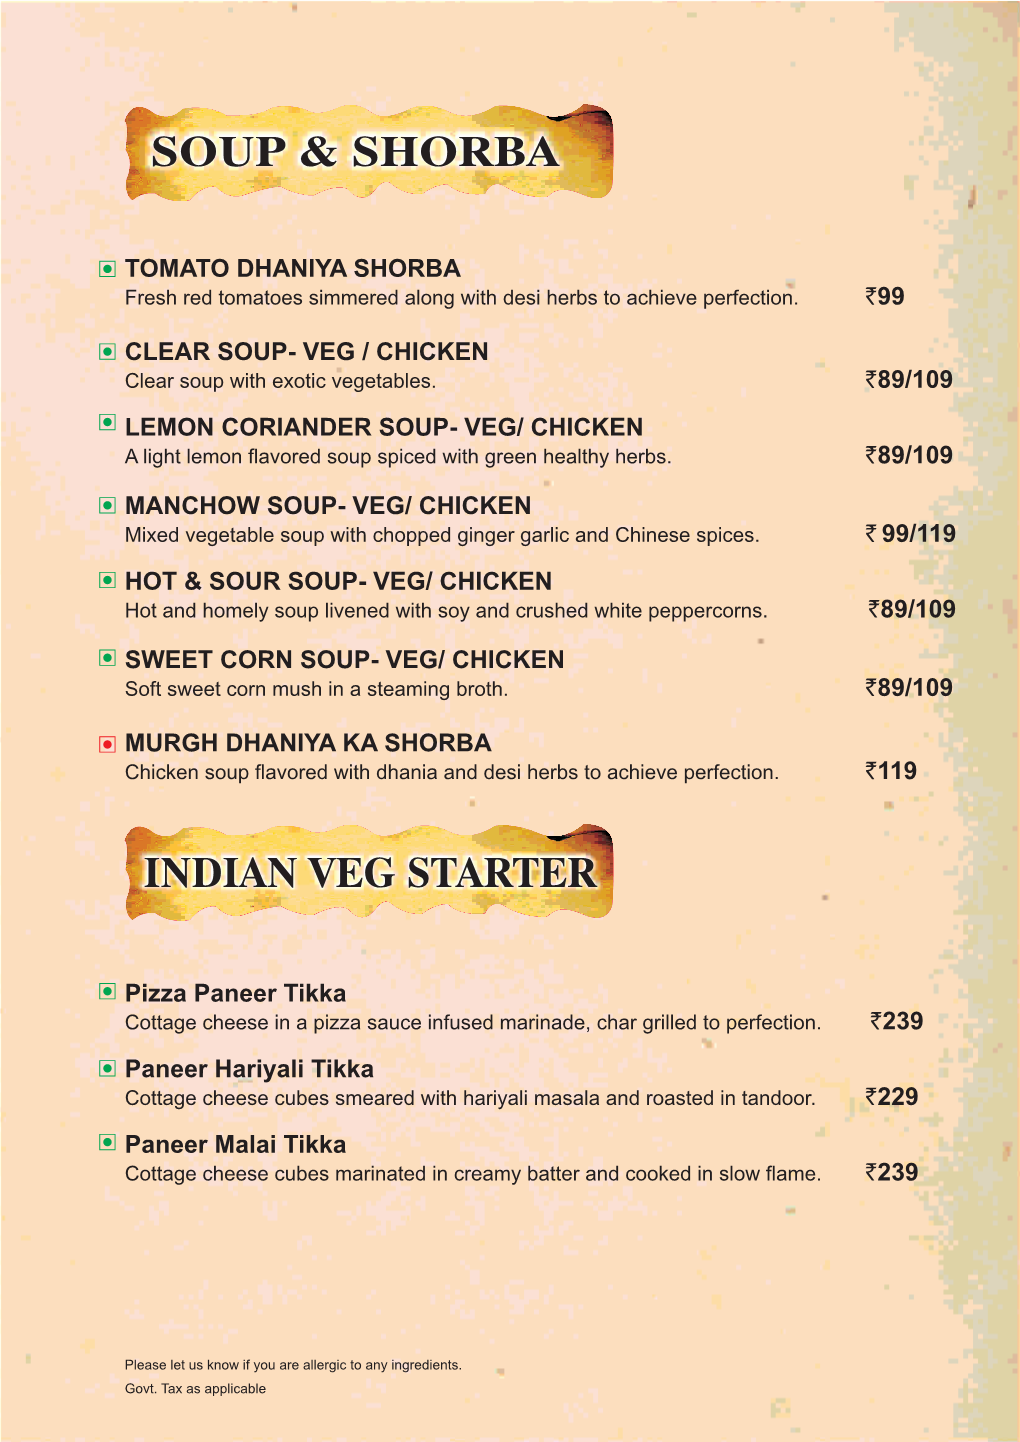 Soup & Shorba Indian Veg Starter